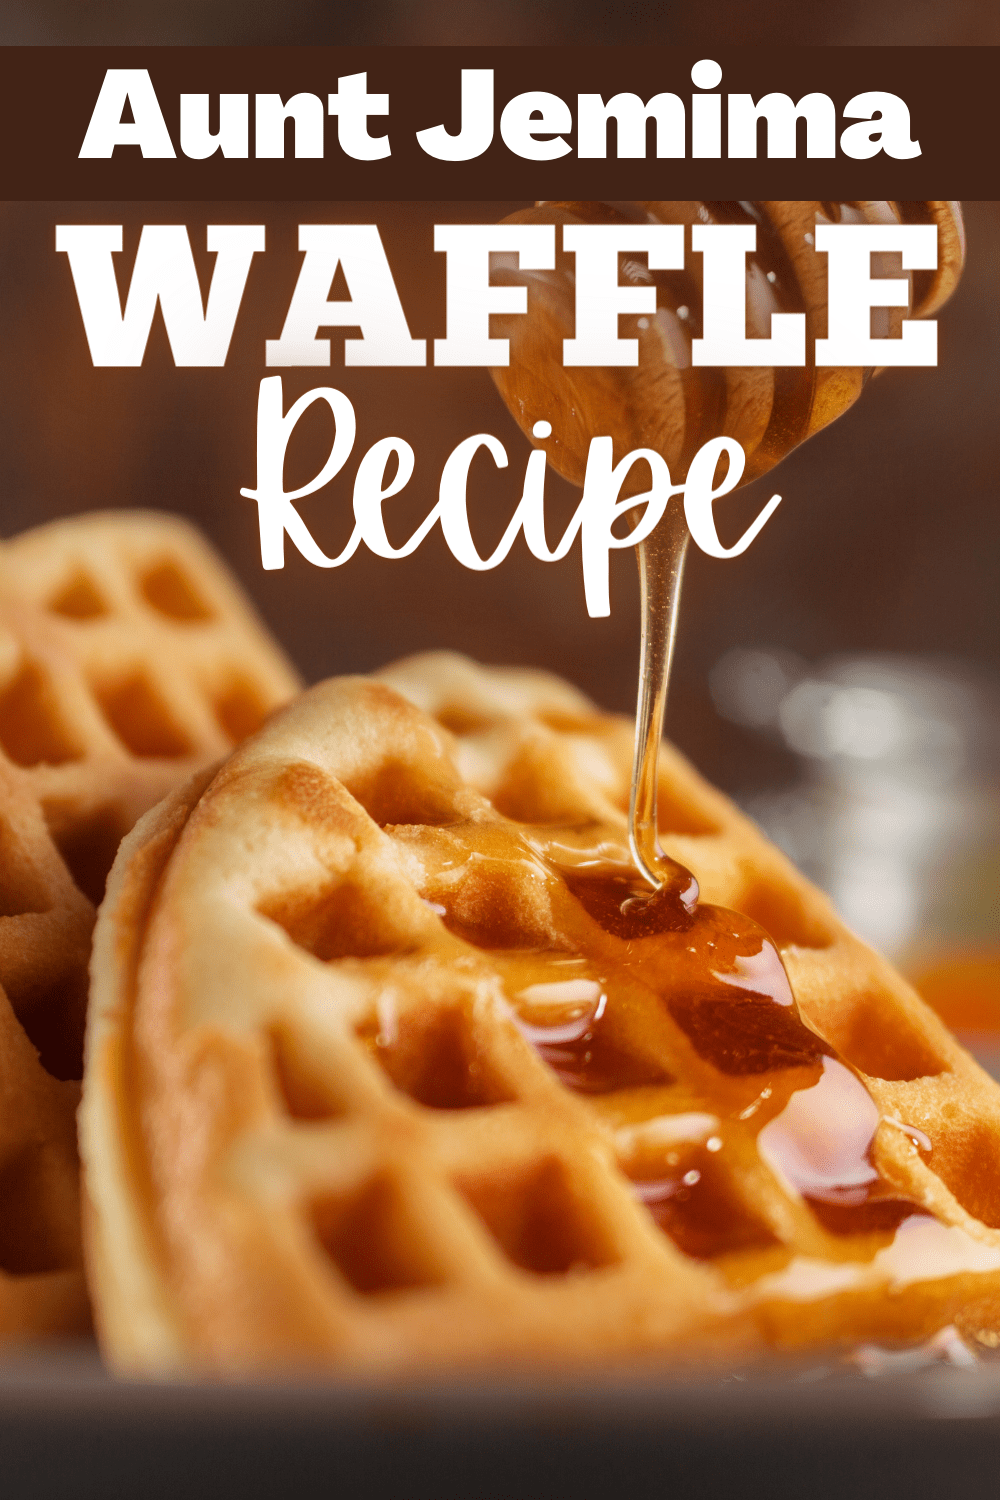 Aunt Jemima Waffle Recipe - Insanely Good